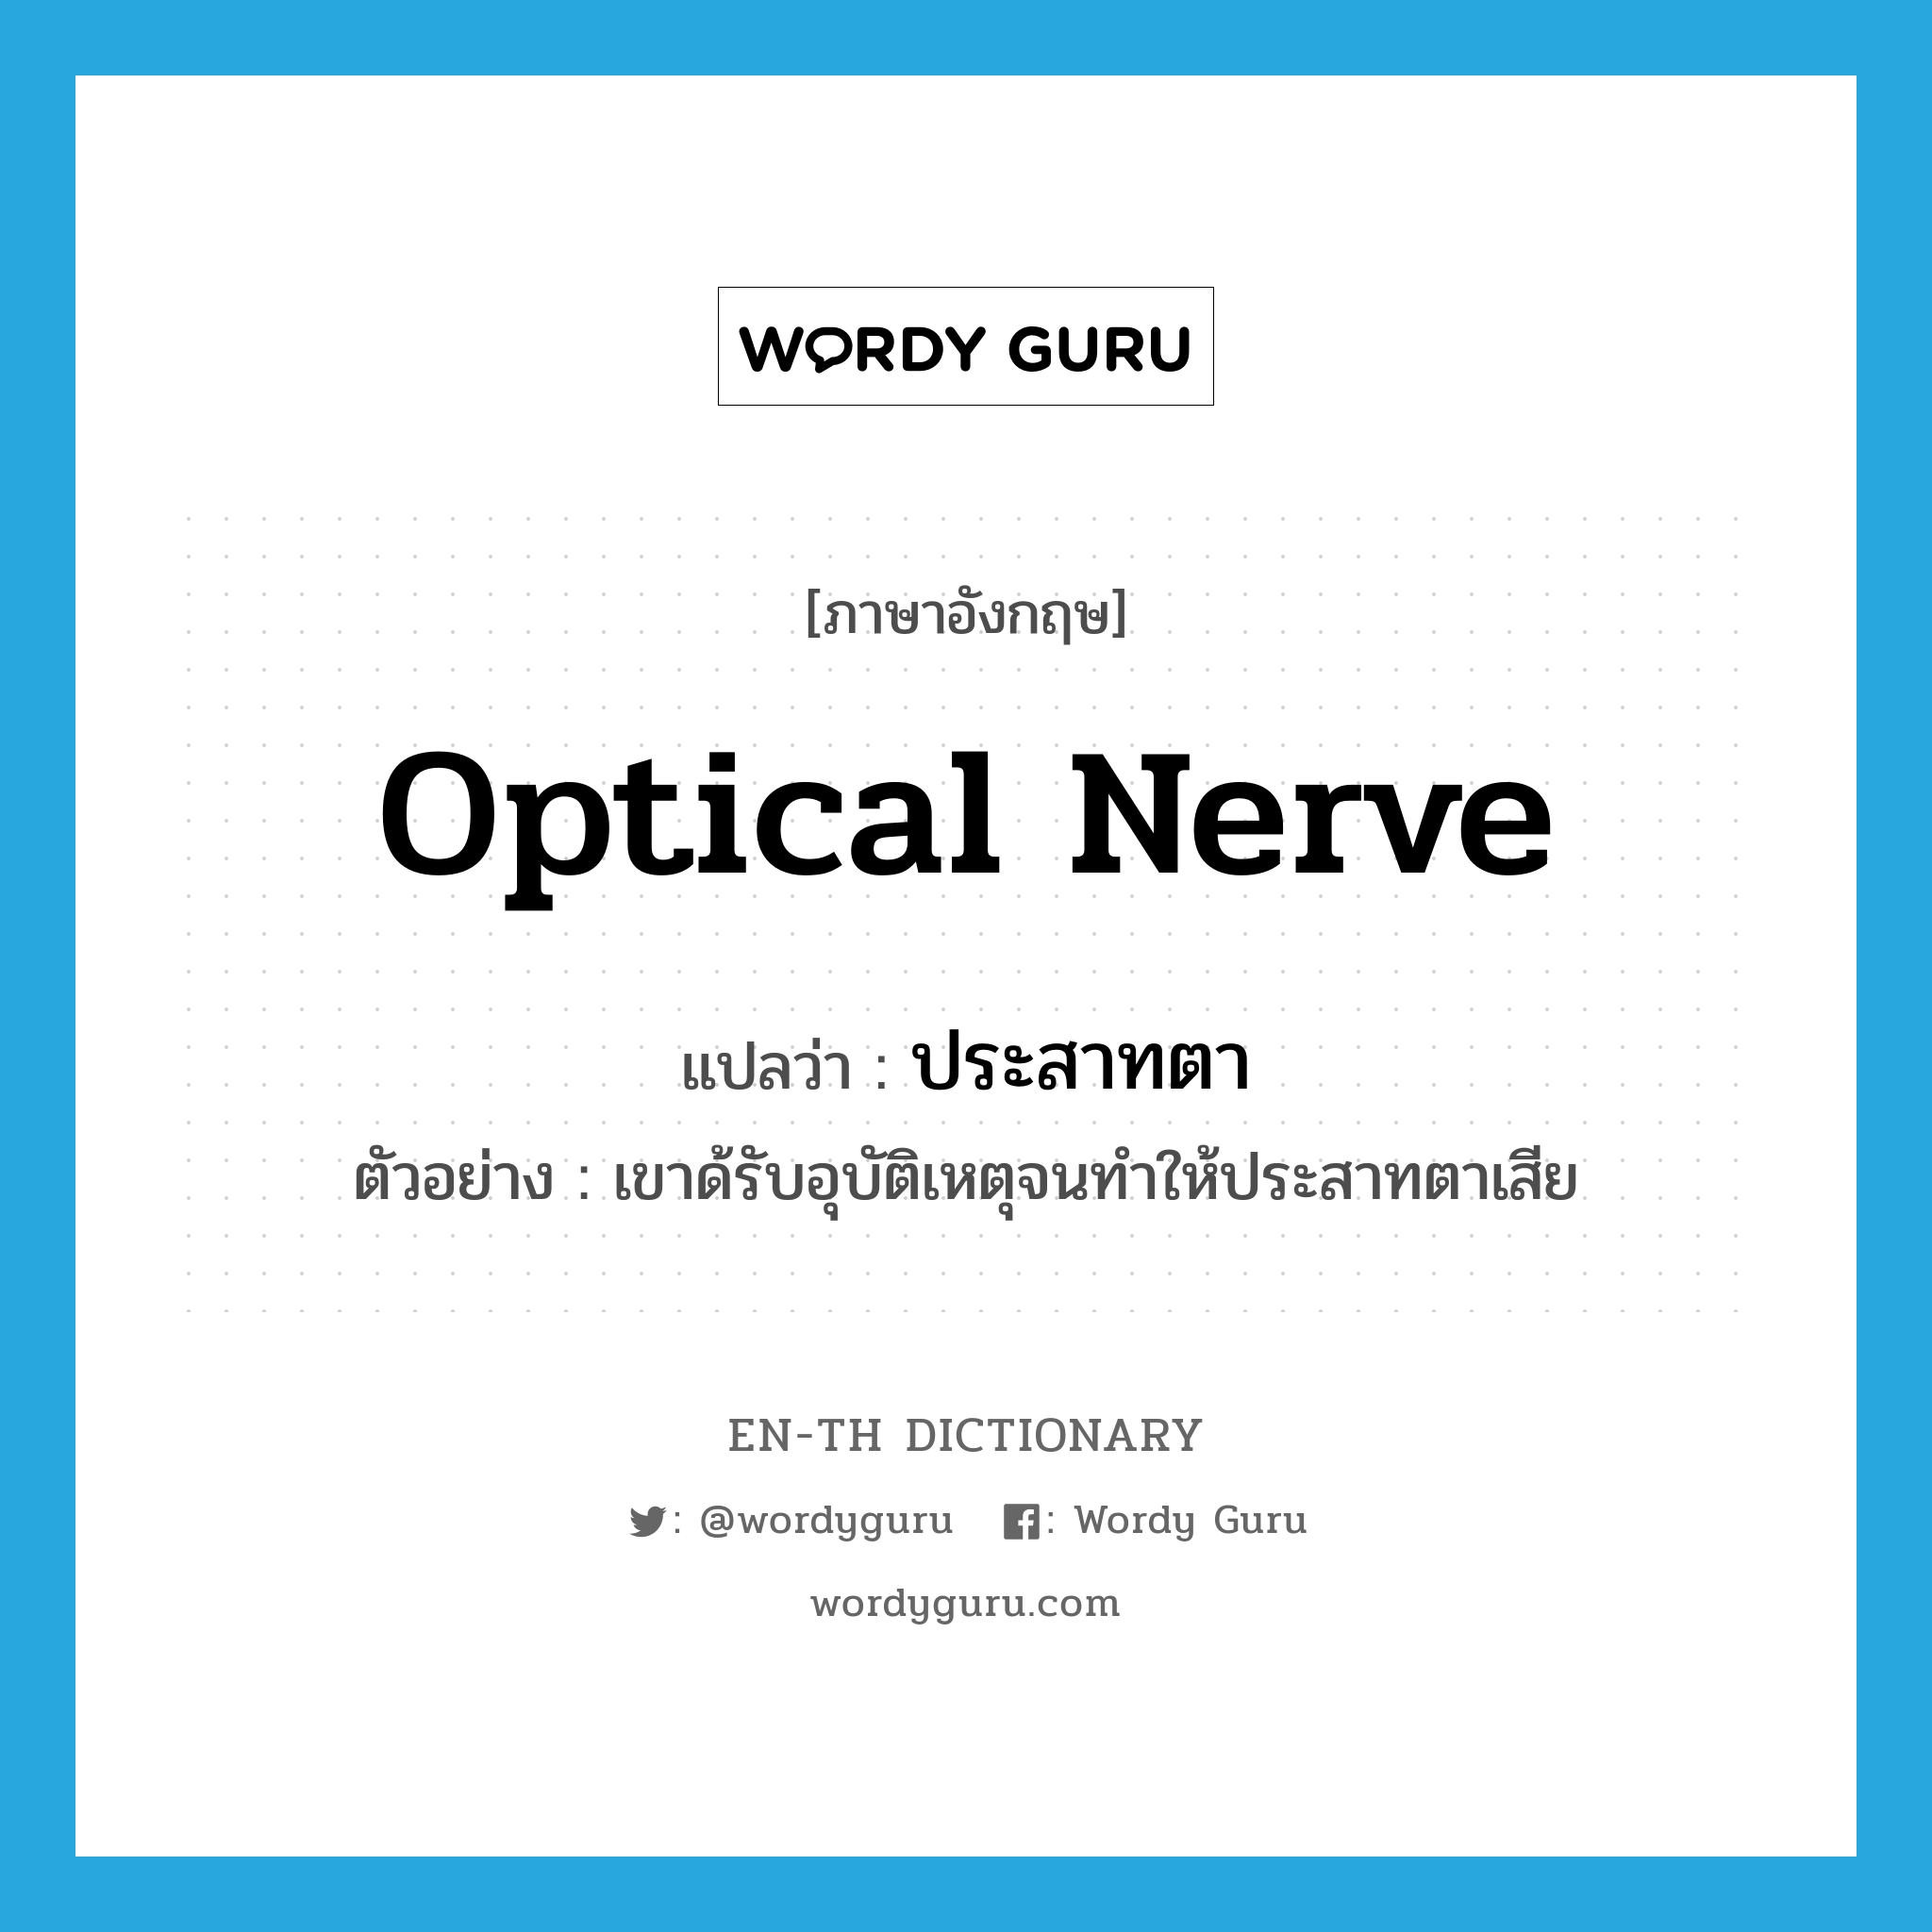 optical nerve แปลว่า?, คำศัพท์ภาษาอังกฤษ optical nerve แปลว่า ประสาทตา ประเภท N ตัวอย่าง เขาด้รับอุบัติเหตุจนทำให้ประสาทตาเสีย หมวด N